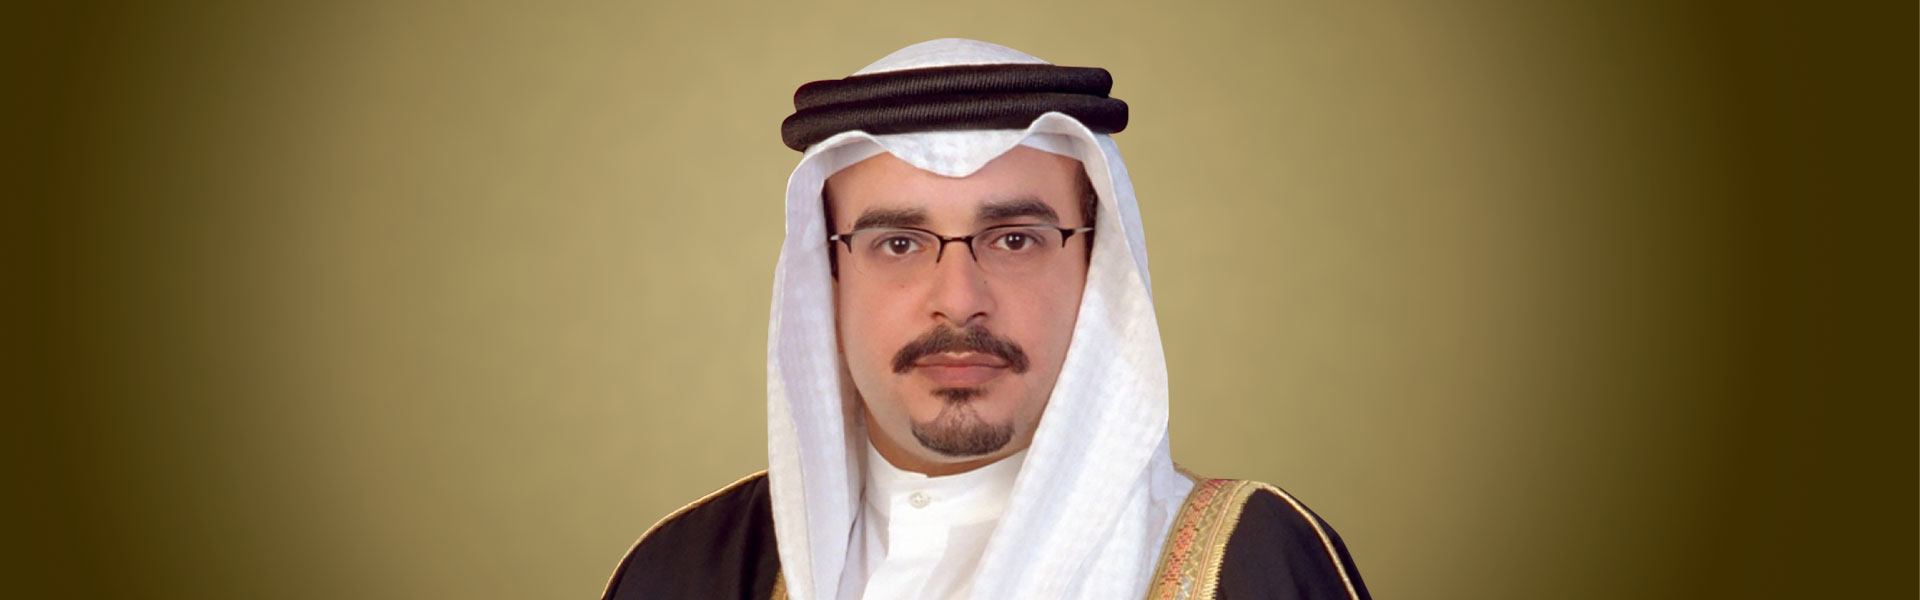 سمو ولي العهد رئيس مجلس الوزراء رئيس مجلس التنمية الاقتصادية يصدر قراراً بإعادة تشكيل مجلس إدارة شركة ممتلكات البحرين القابضة